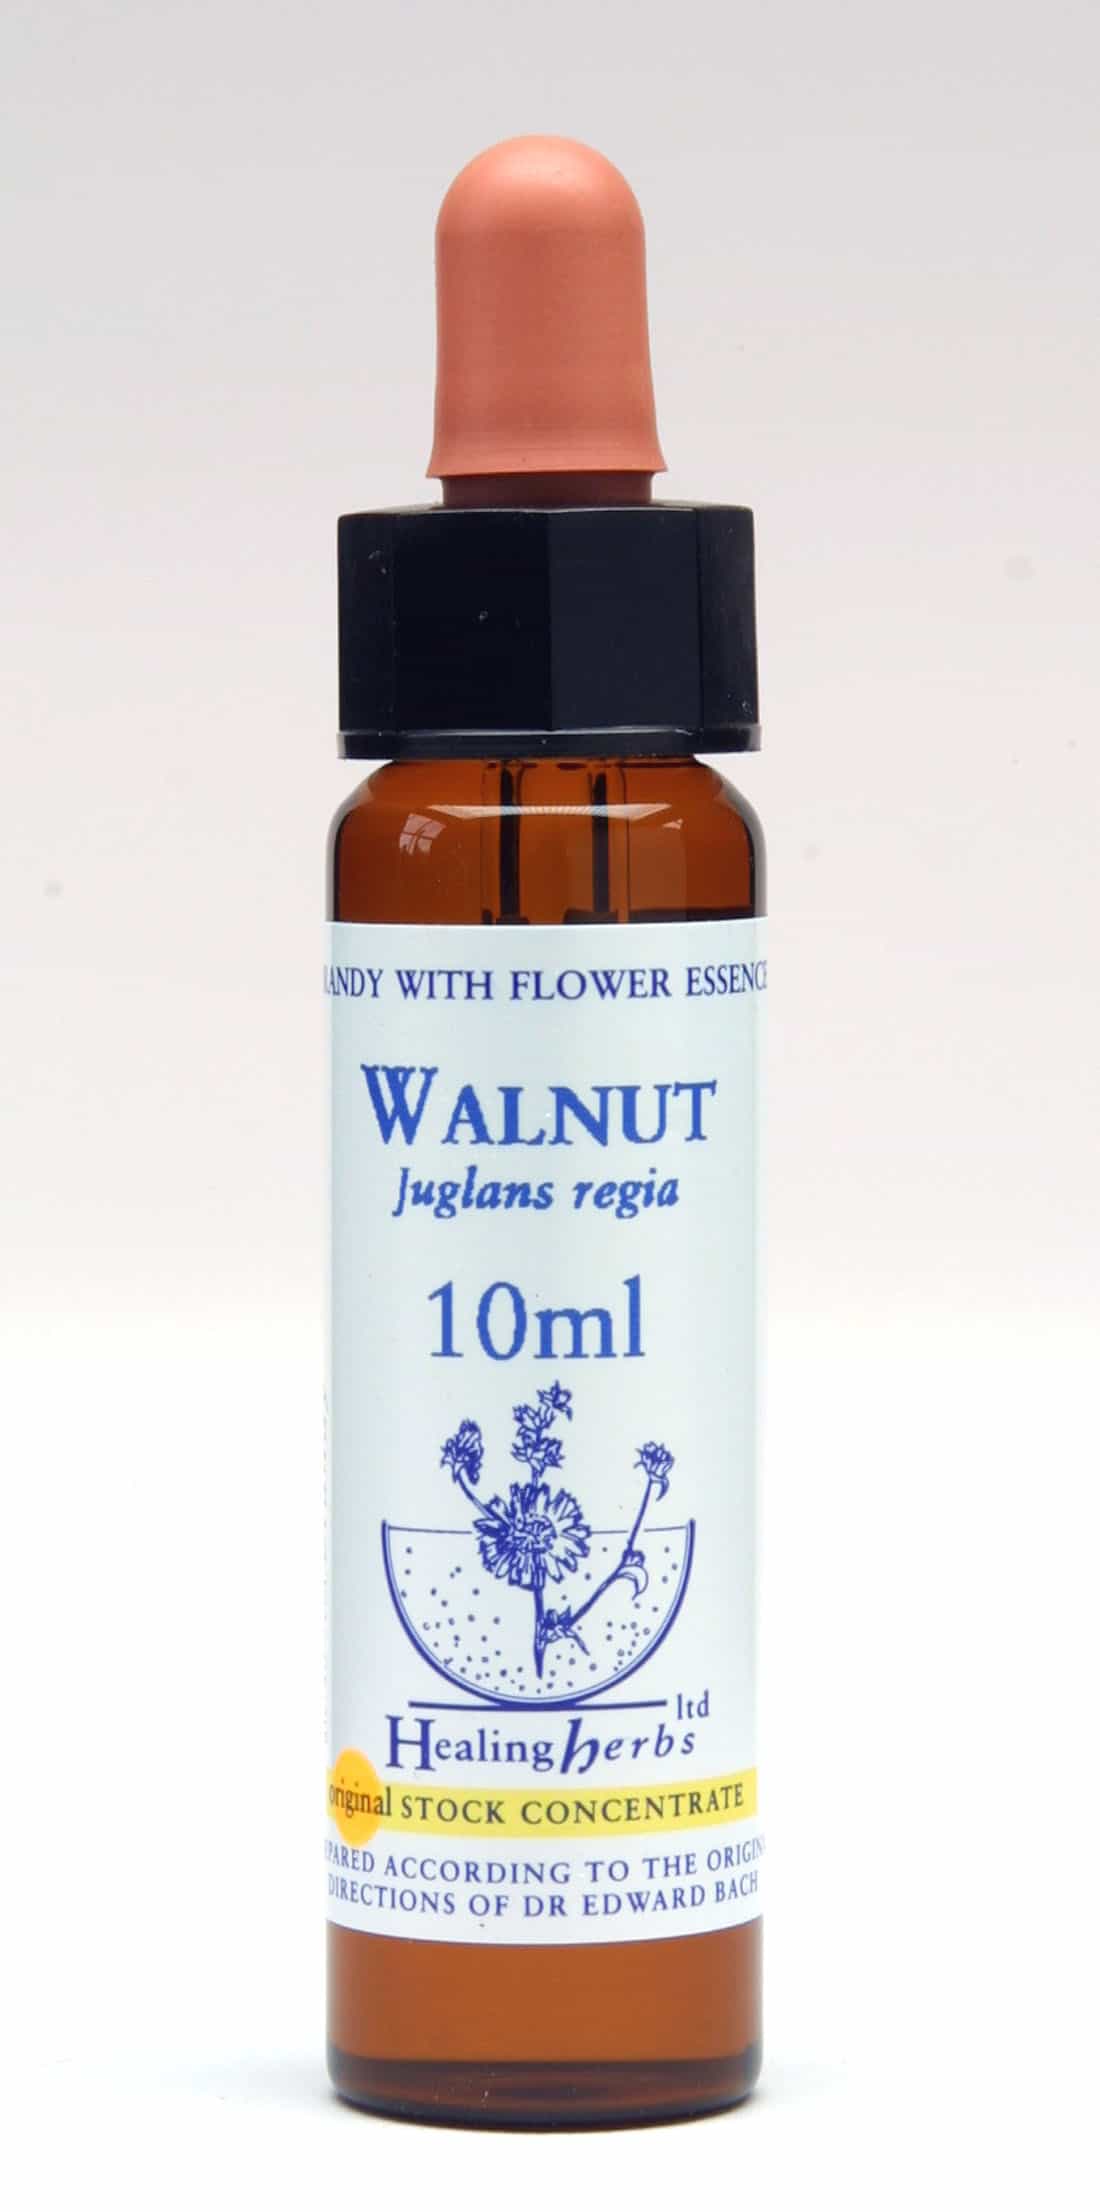 Walnut Flor de Bach Healing Herbs